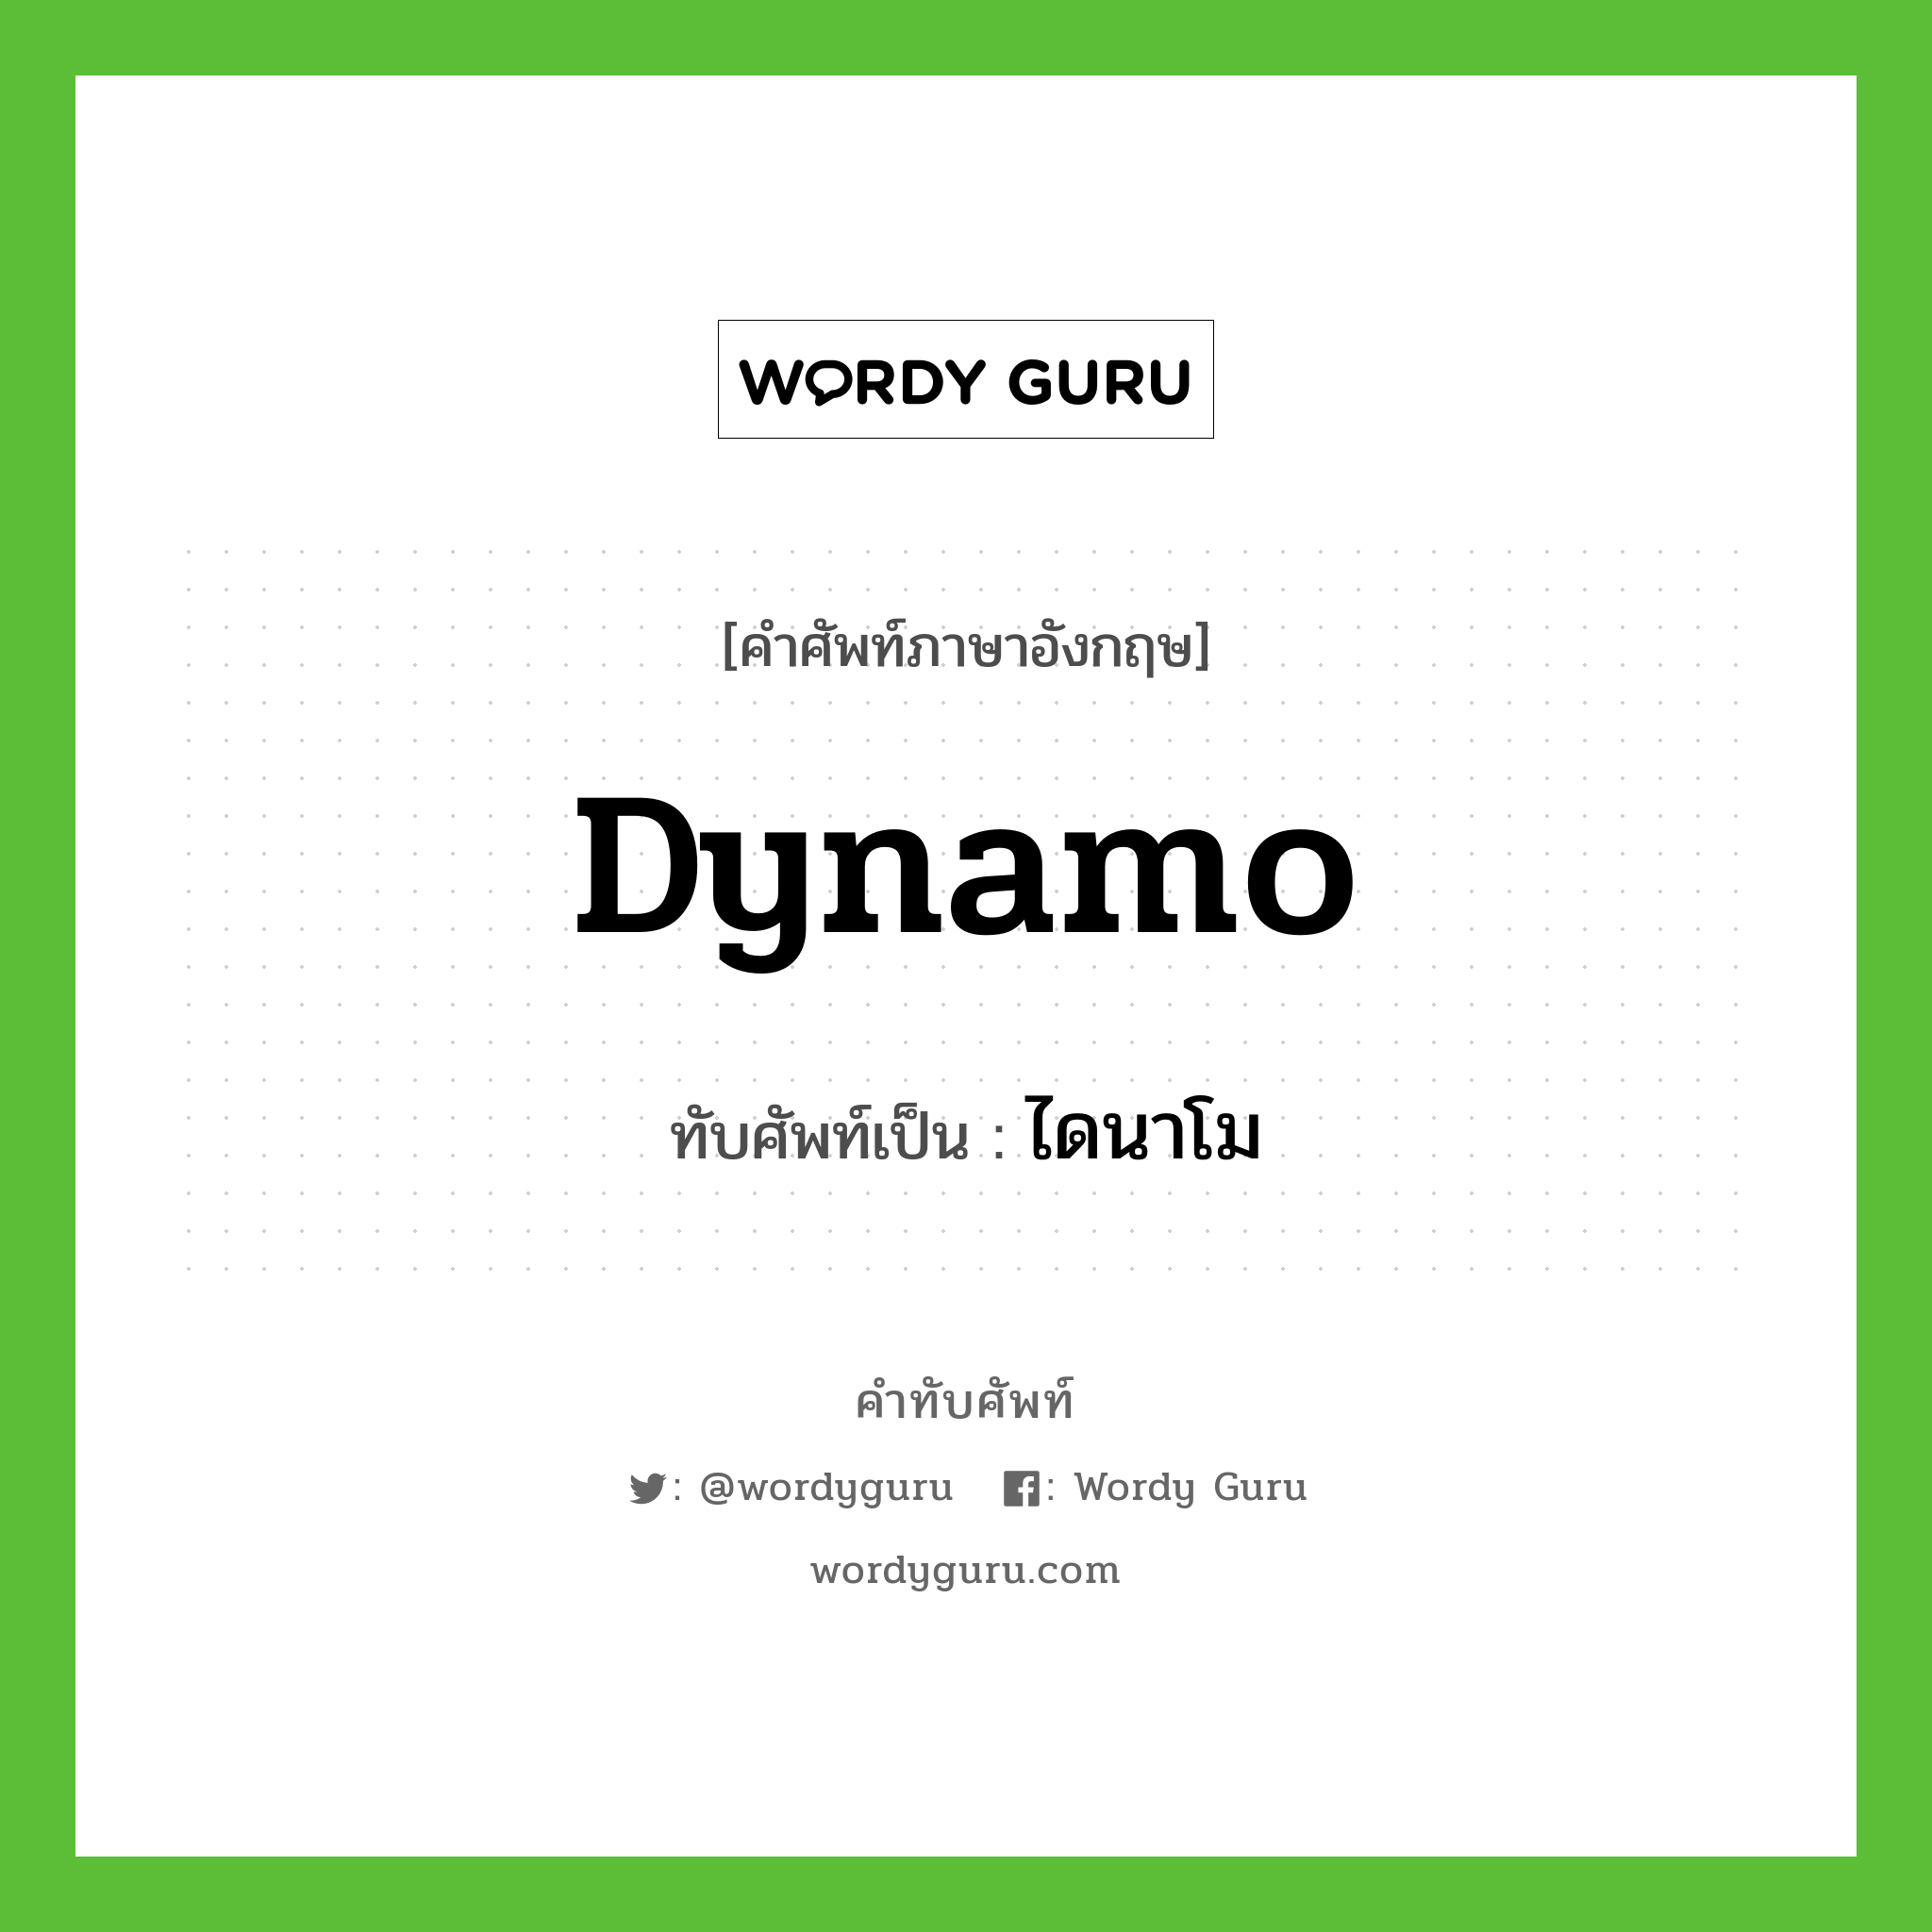 dynamo เขียนเป็นคำไทยว่าอะไร?, คำศัพท์ภาษาอังกฤษ dynamo ทับศัพท์เป็น ไดนาโม